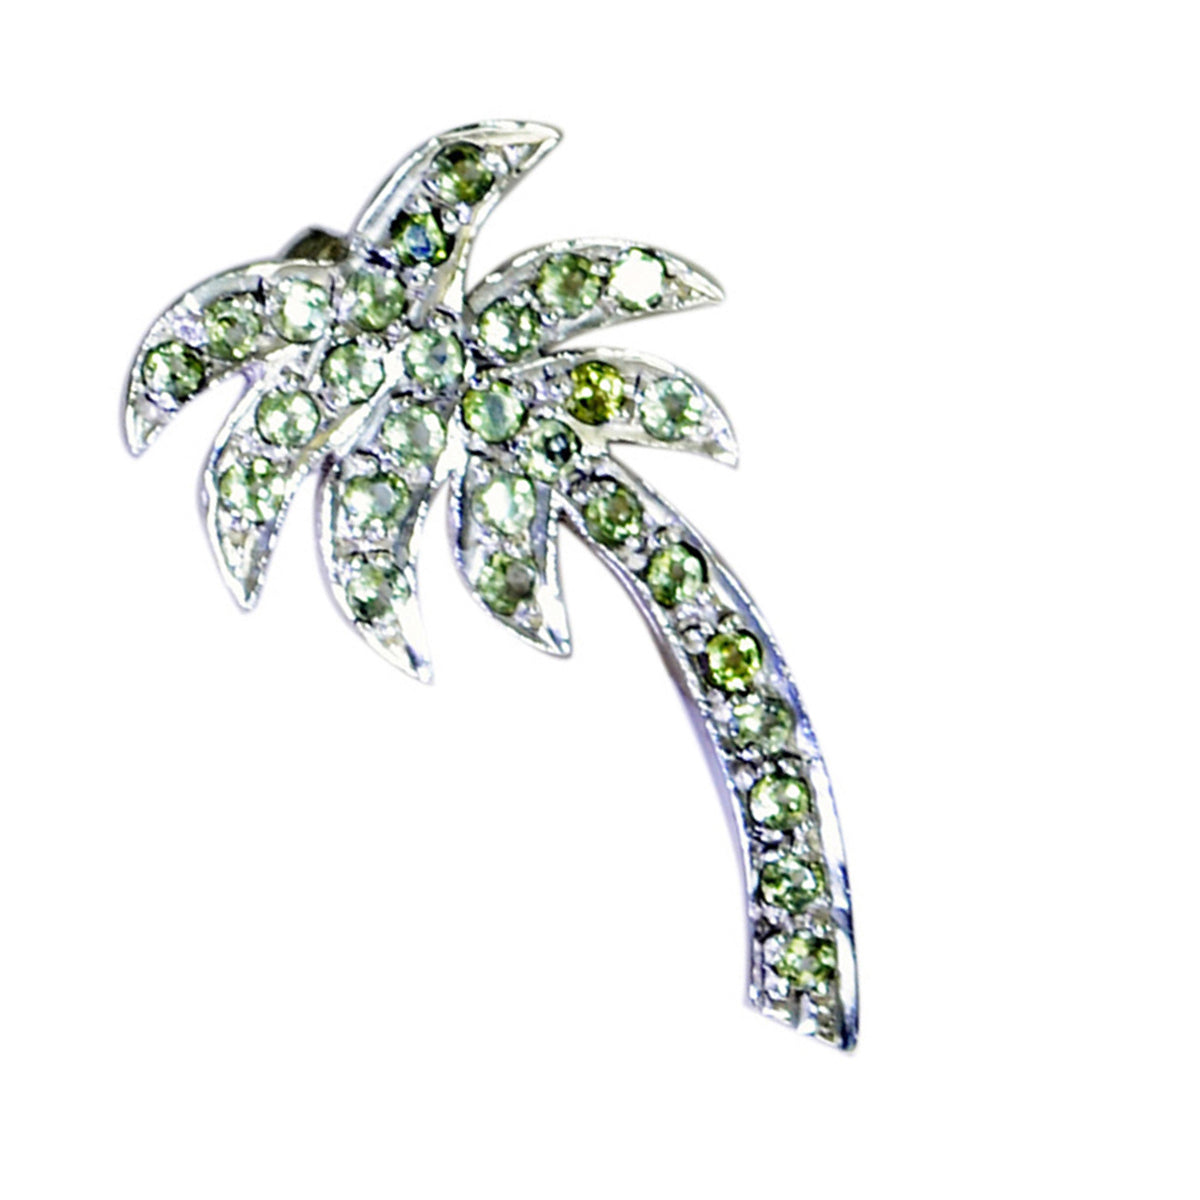 riyo tilltalande ädelstenar runda facetterad grön peridot silverhänge present för förlovning